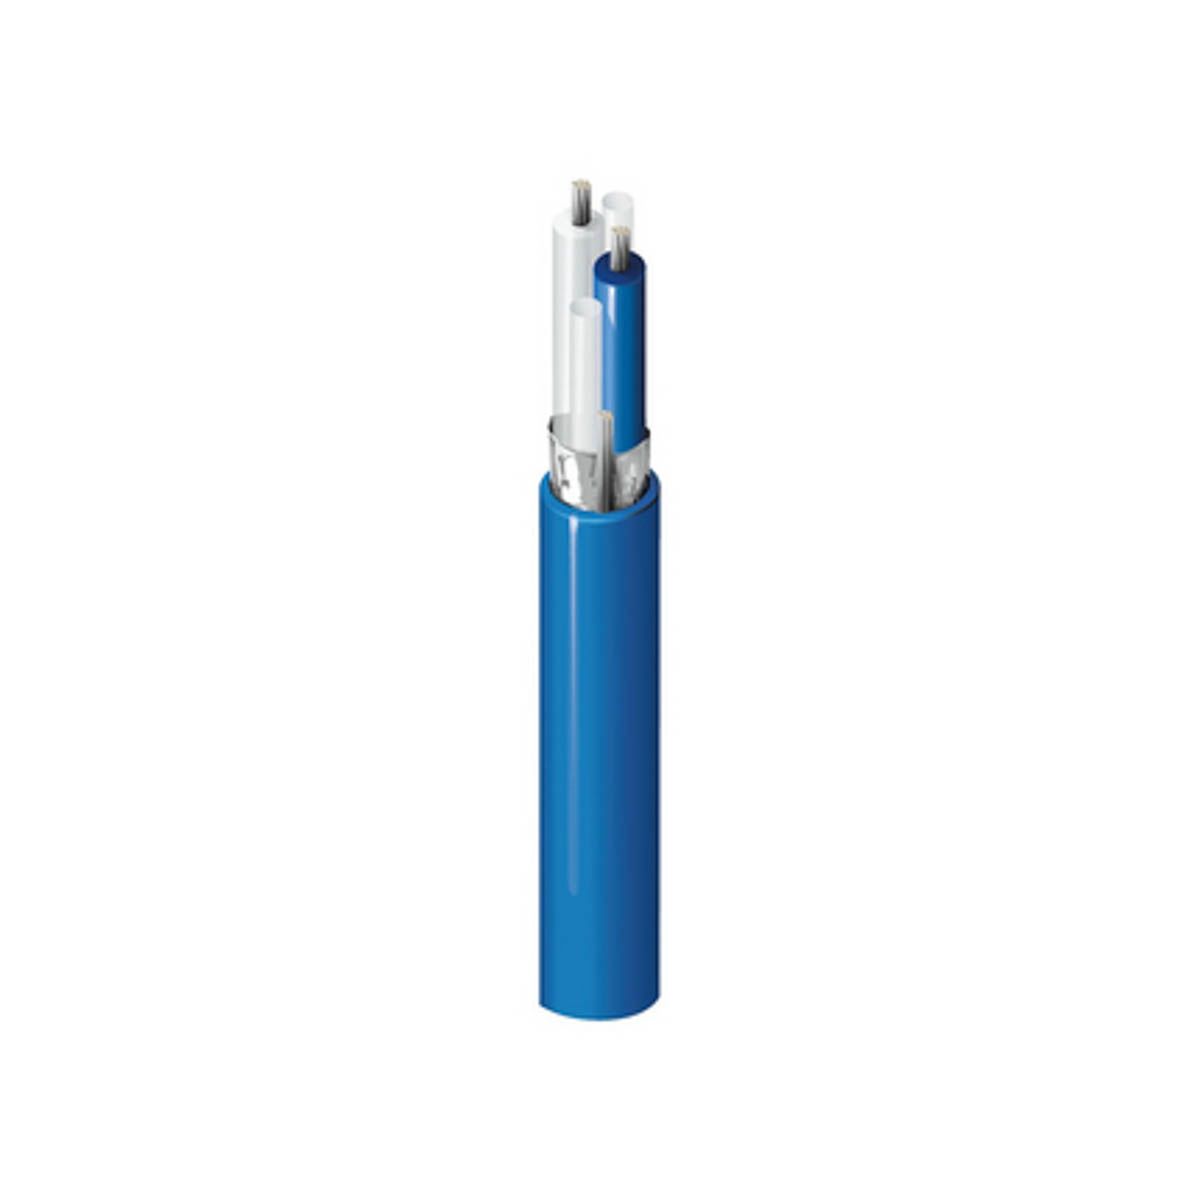 Belden Twinaxialkabel PVC Blau 30m 124 Ω PE 6.1mm 72,16 pF/m